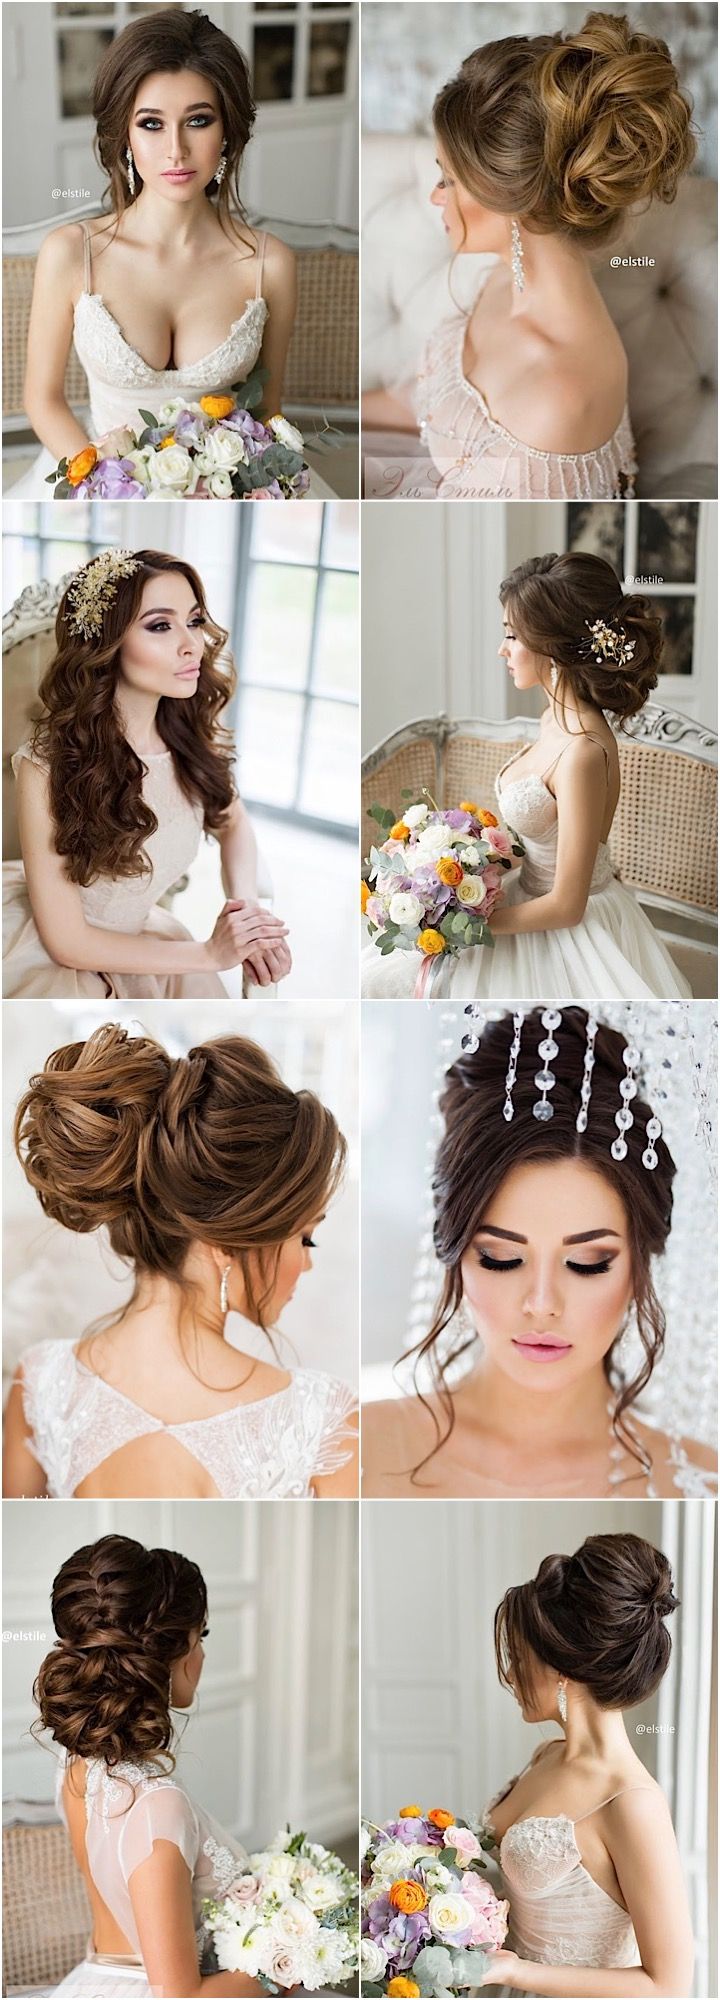 Featured Updo Wedding Hairstyle: Elstile; www.elstile.ru...